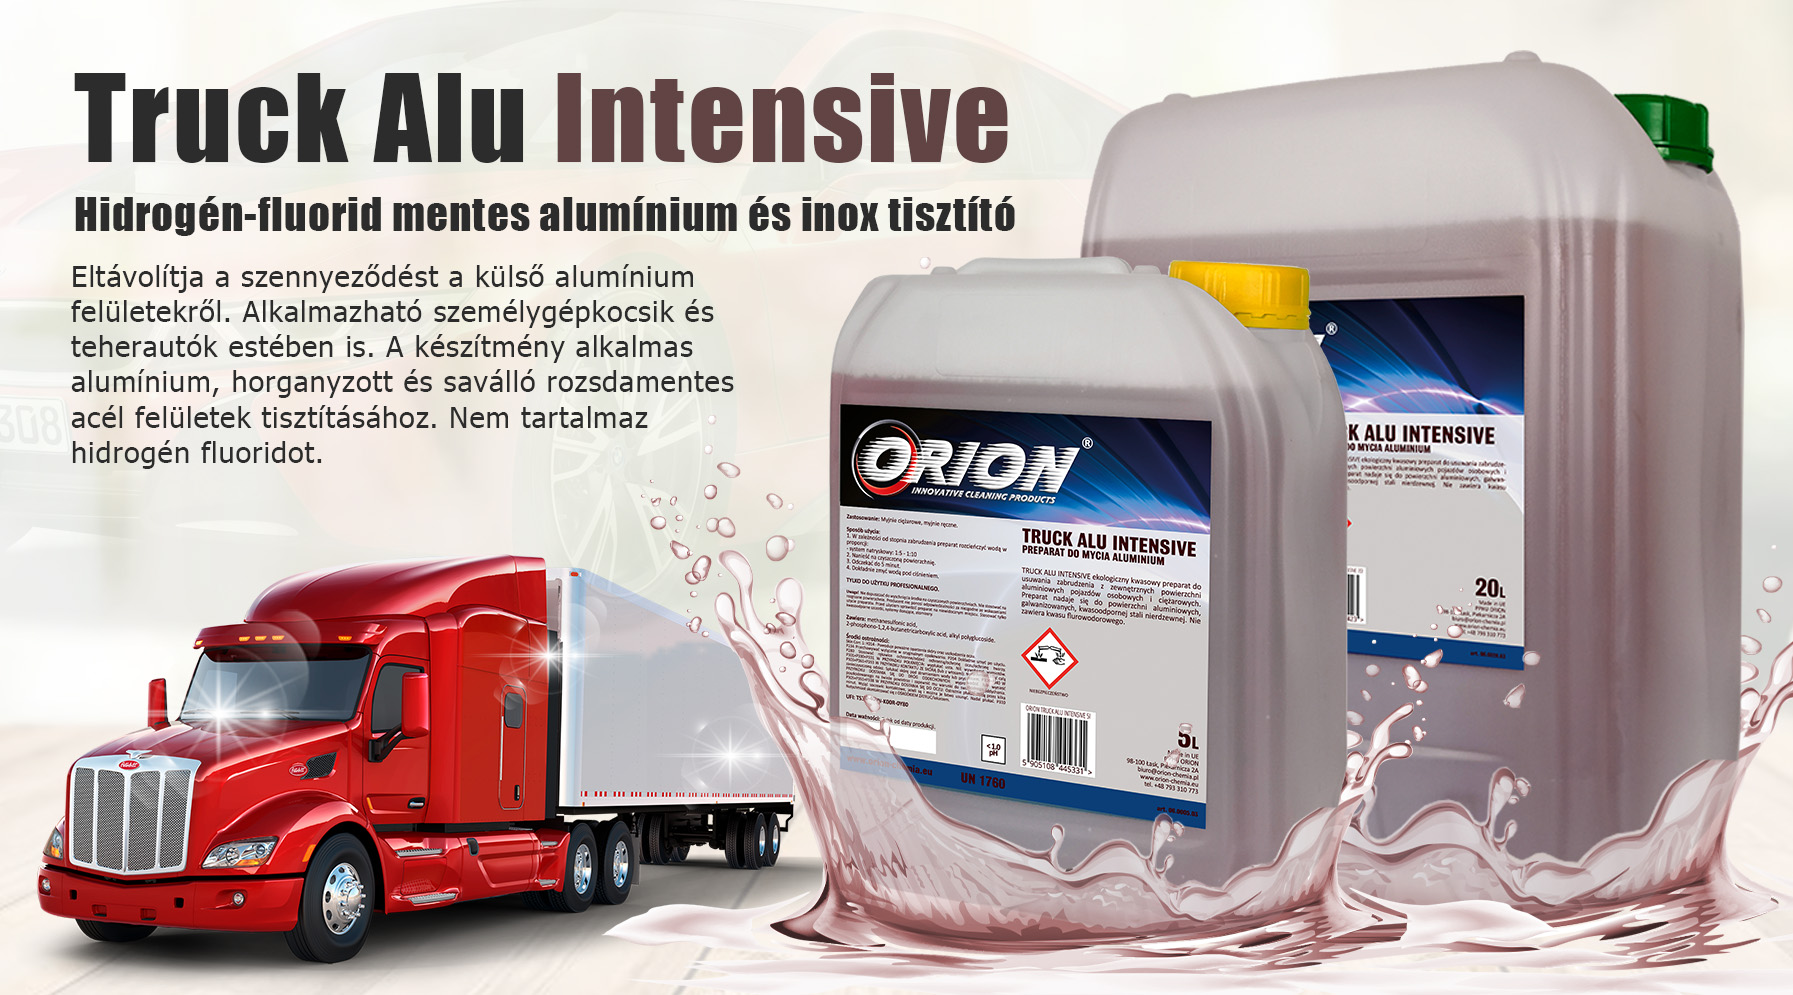 Truck Alu Intensive Hidrogén-fluorid mentes alumínium és inox tisztító